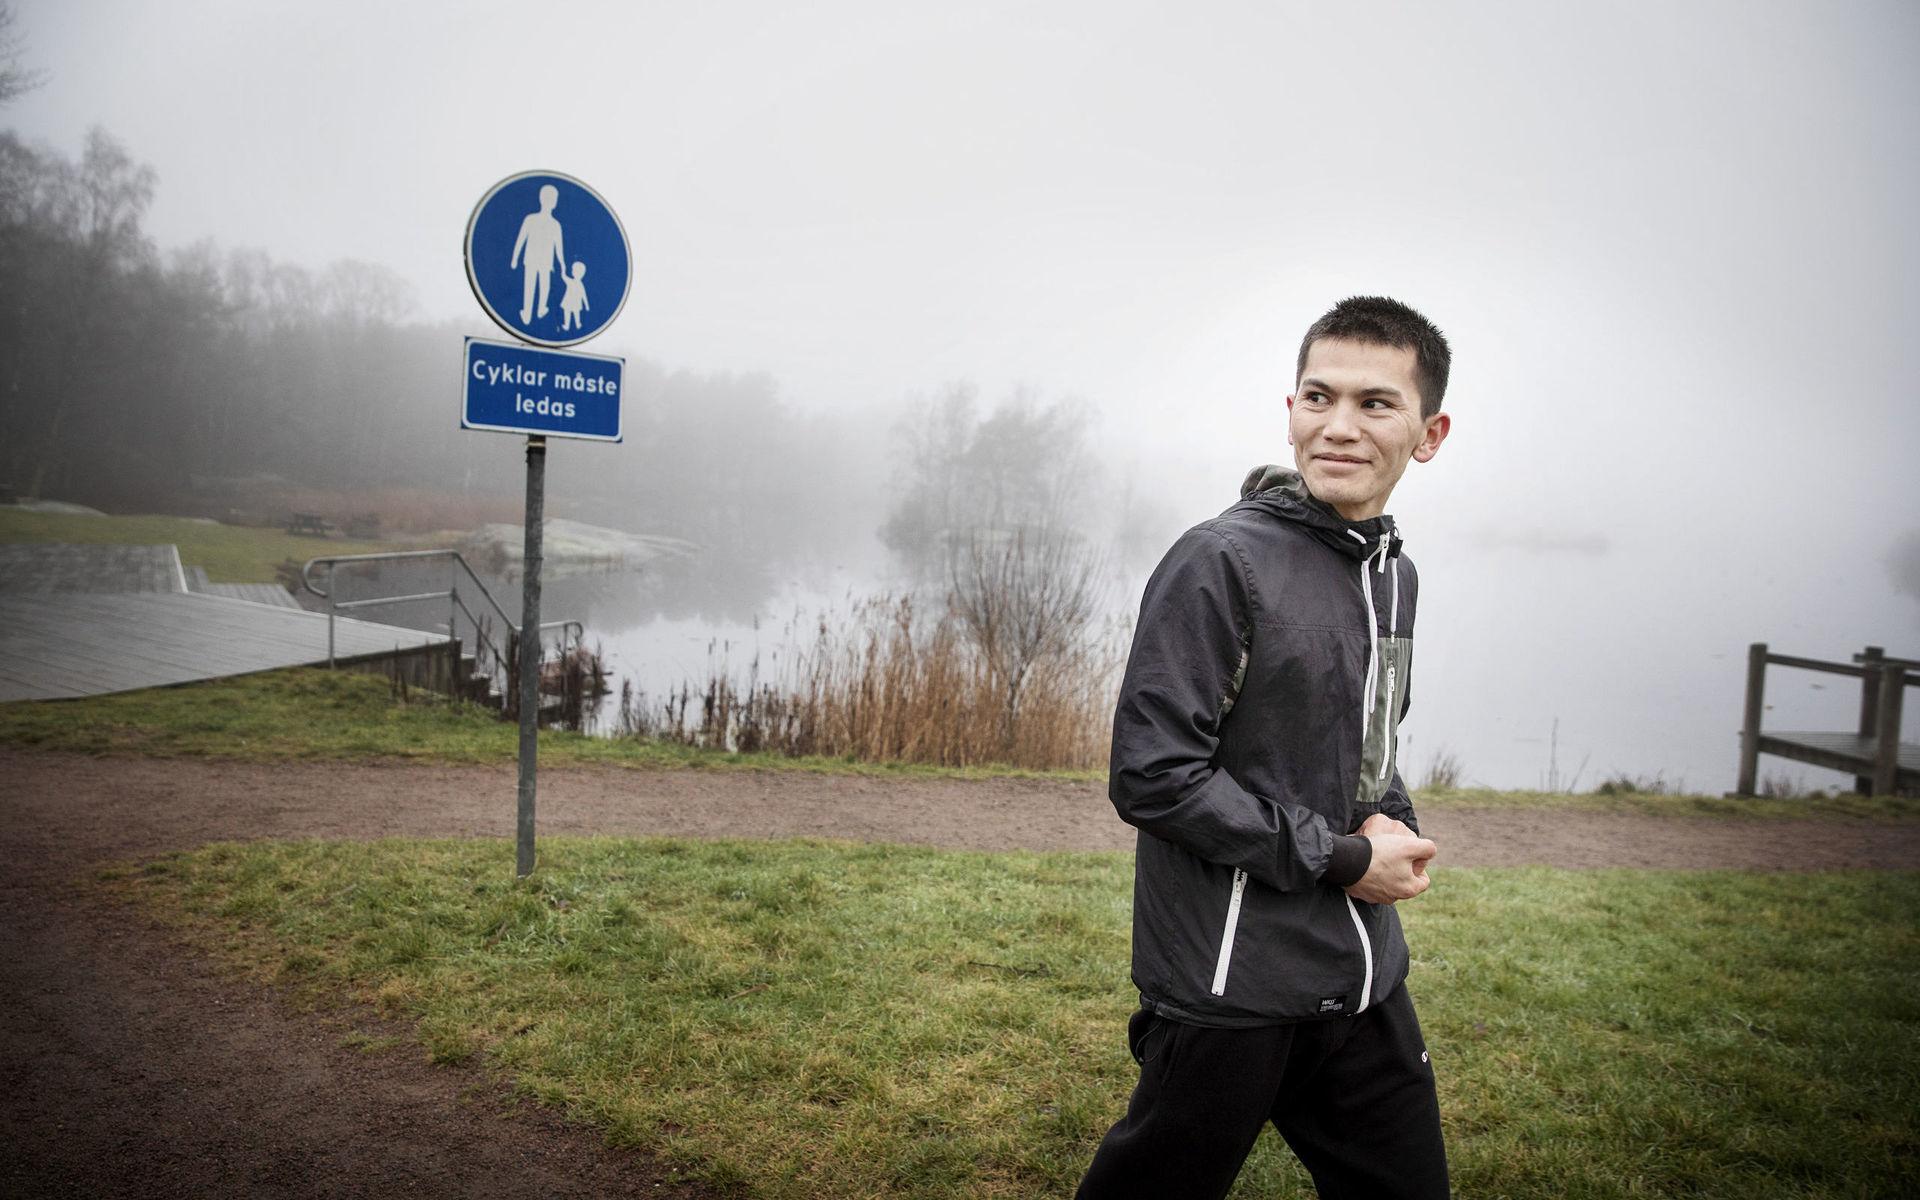 Trygg i Biskopsgården. Adam Miraszi börjar dagen med en joggingtur vid Svarte Mosse. Han trivs och känner sig mer trygg i Biskopsgården än i Hjällbo, där han bodde tidigare.